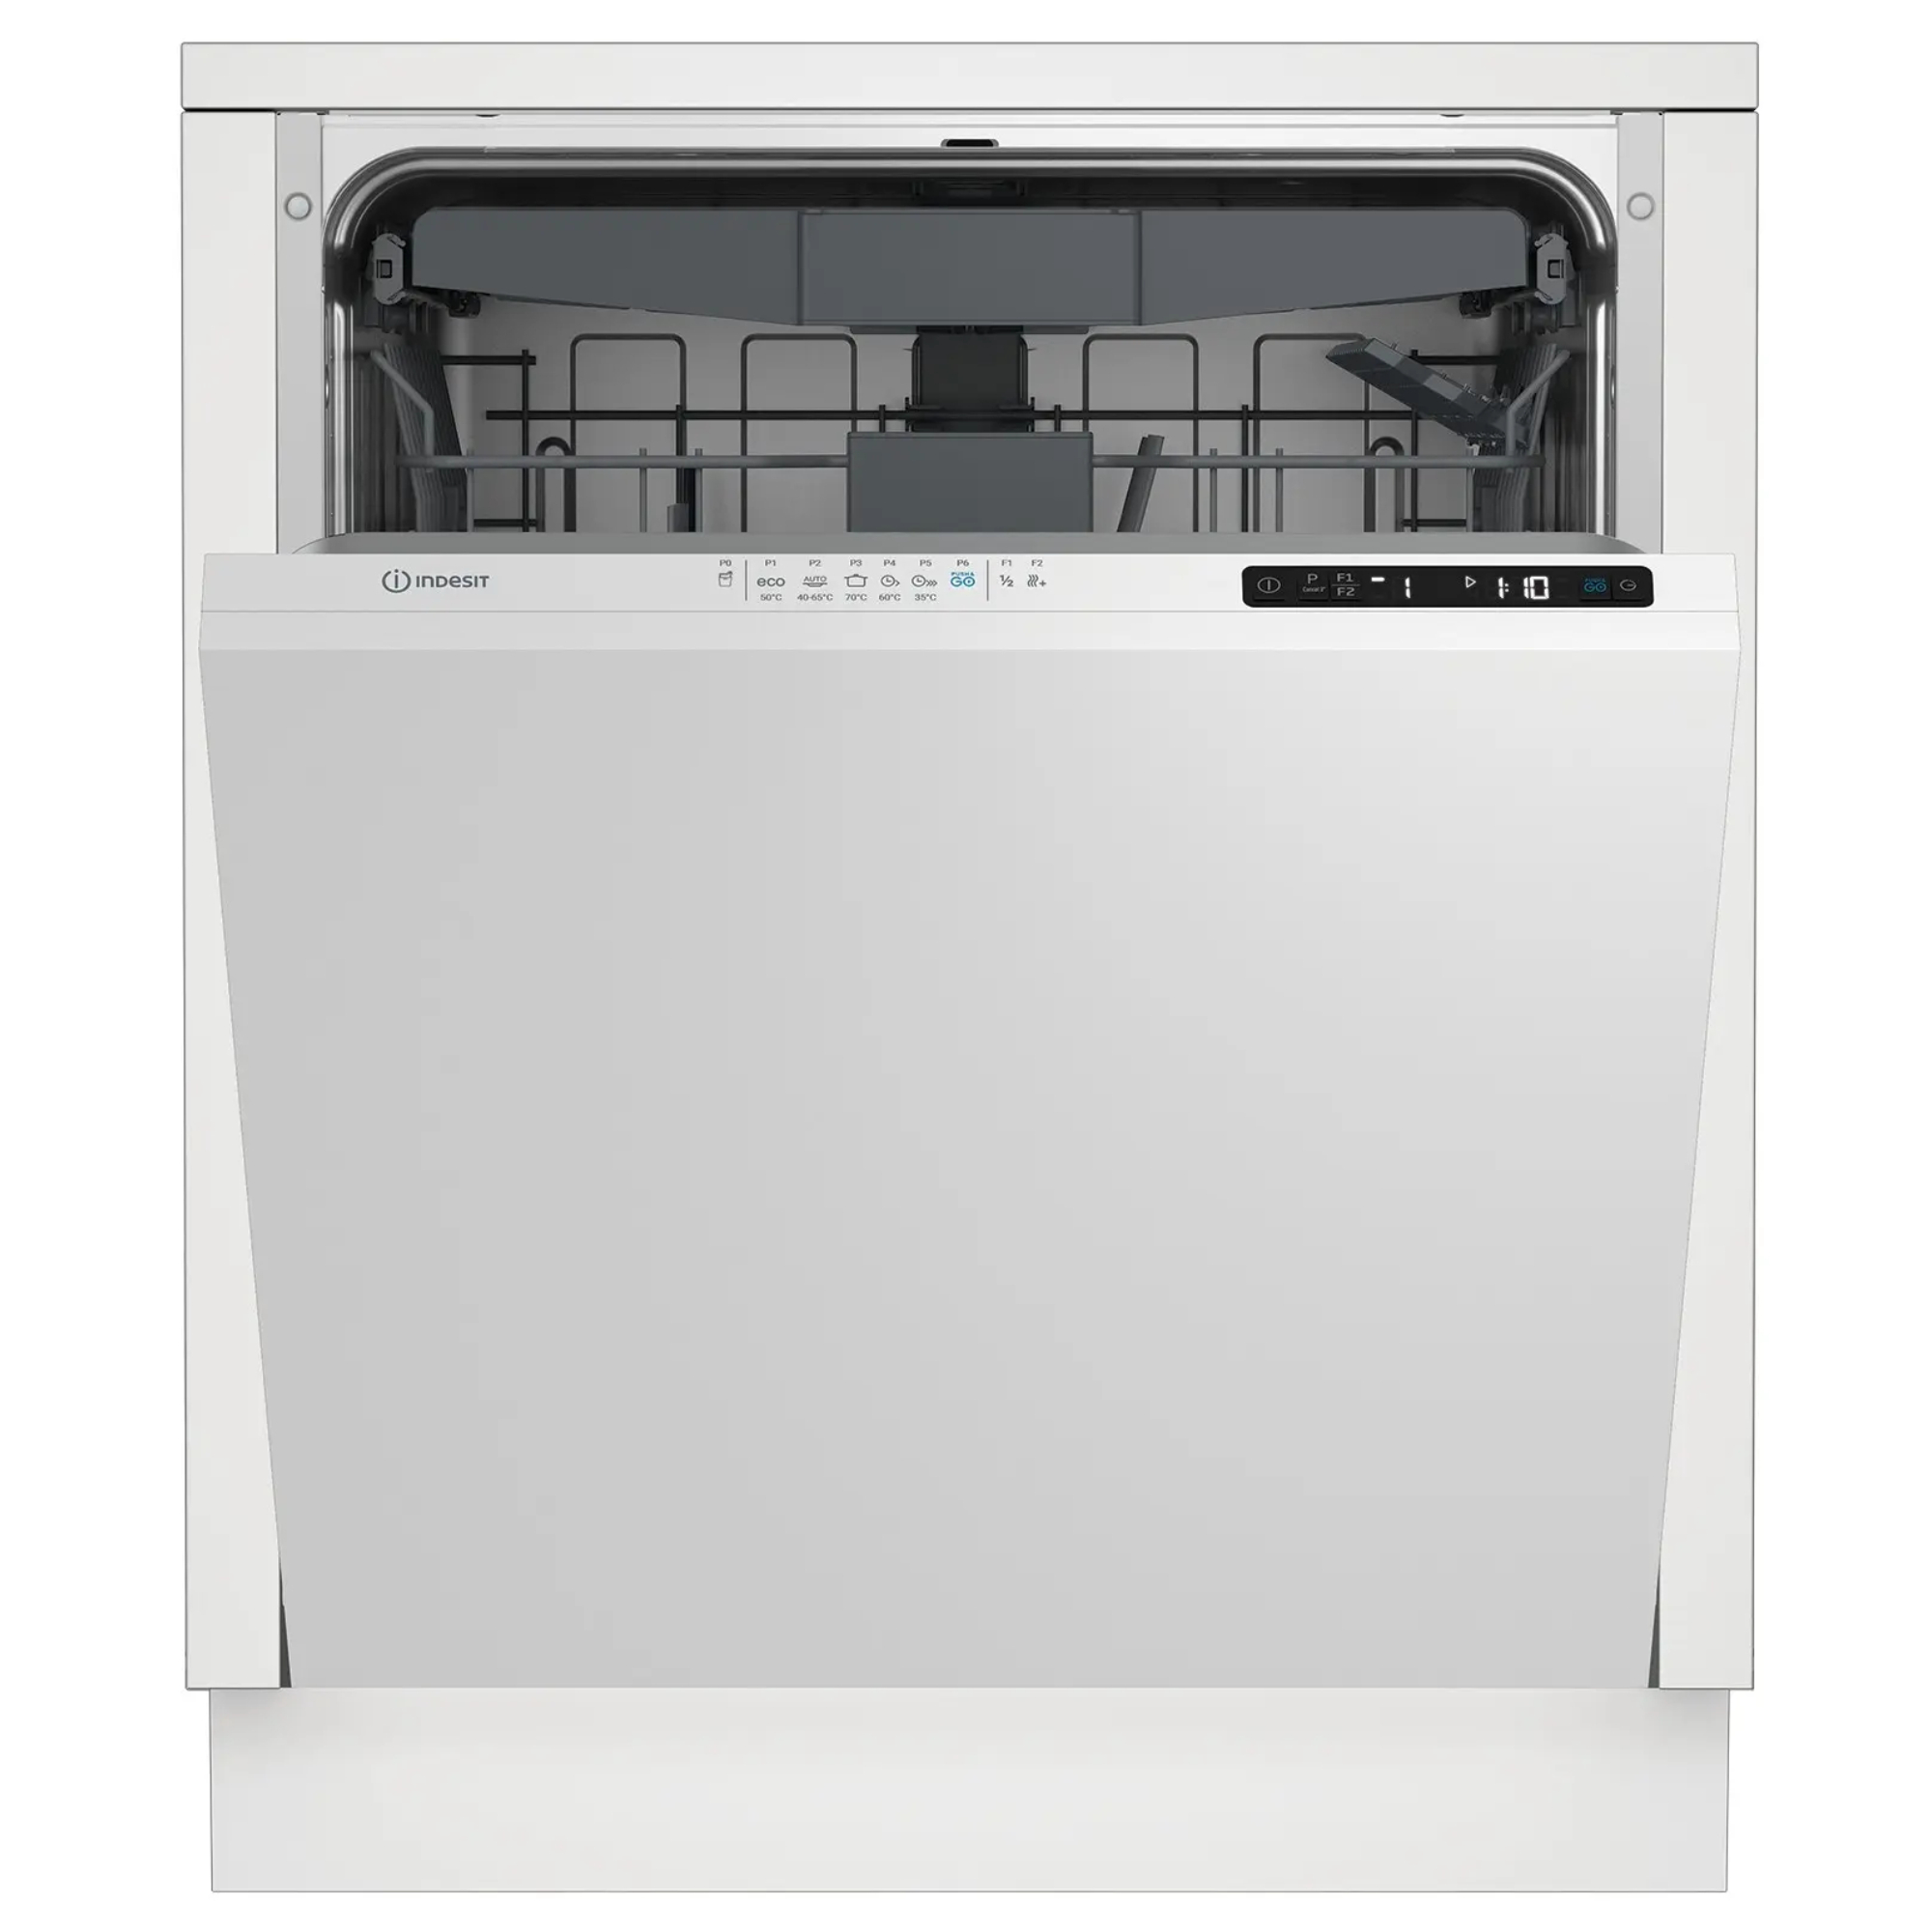 Встраиваемая посудомоечная машина Indesit DI 5C65 AED посудомоечная машина indesit dfs 1a59